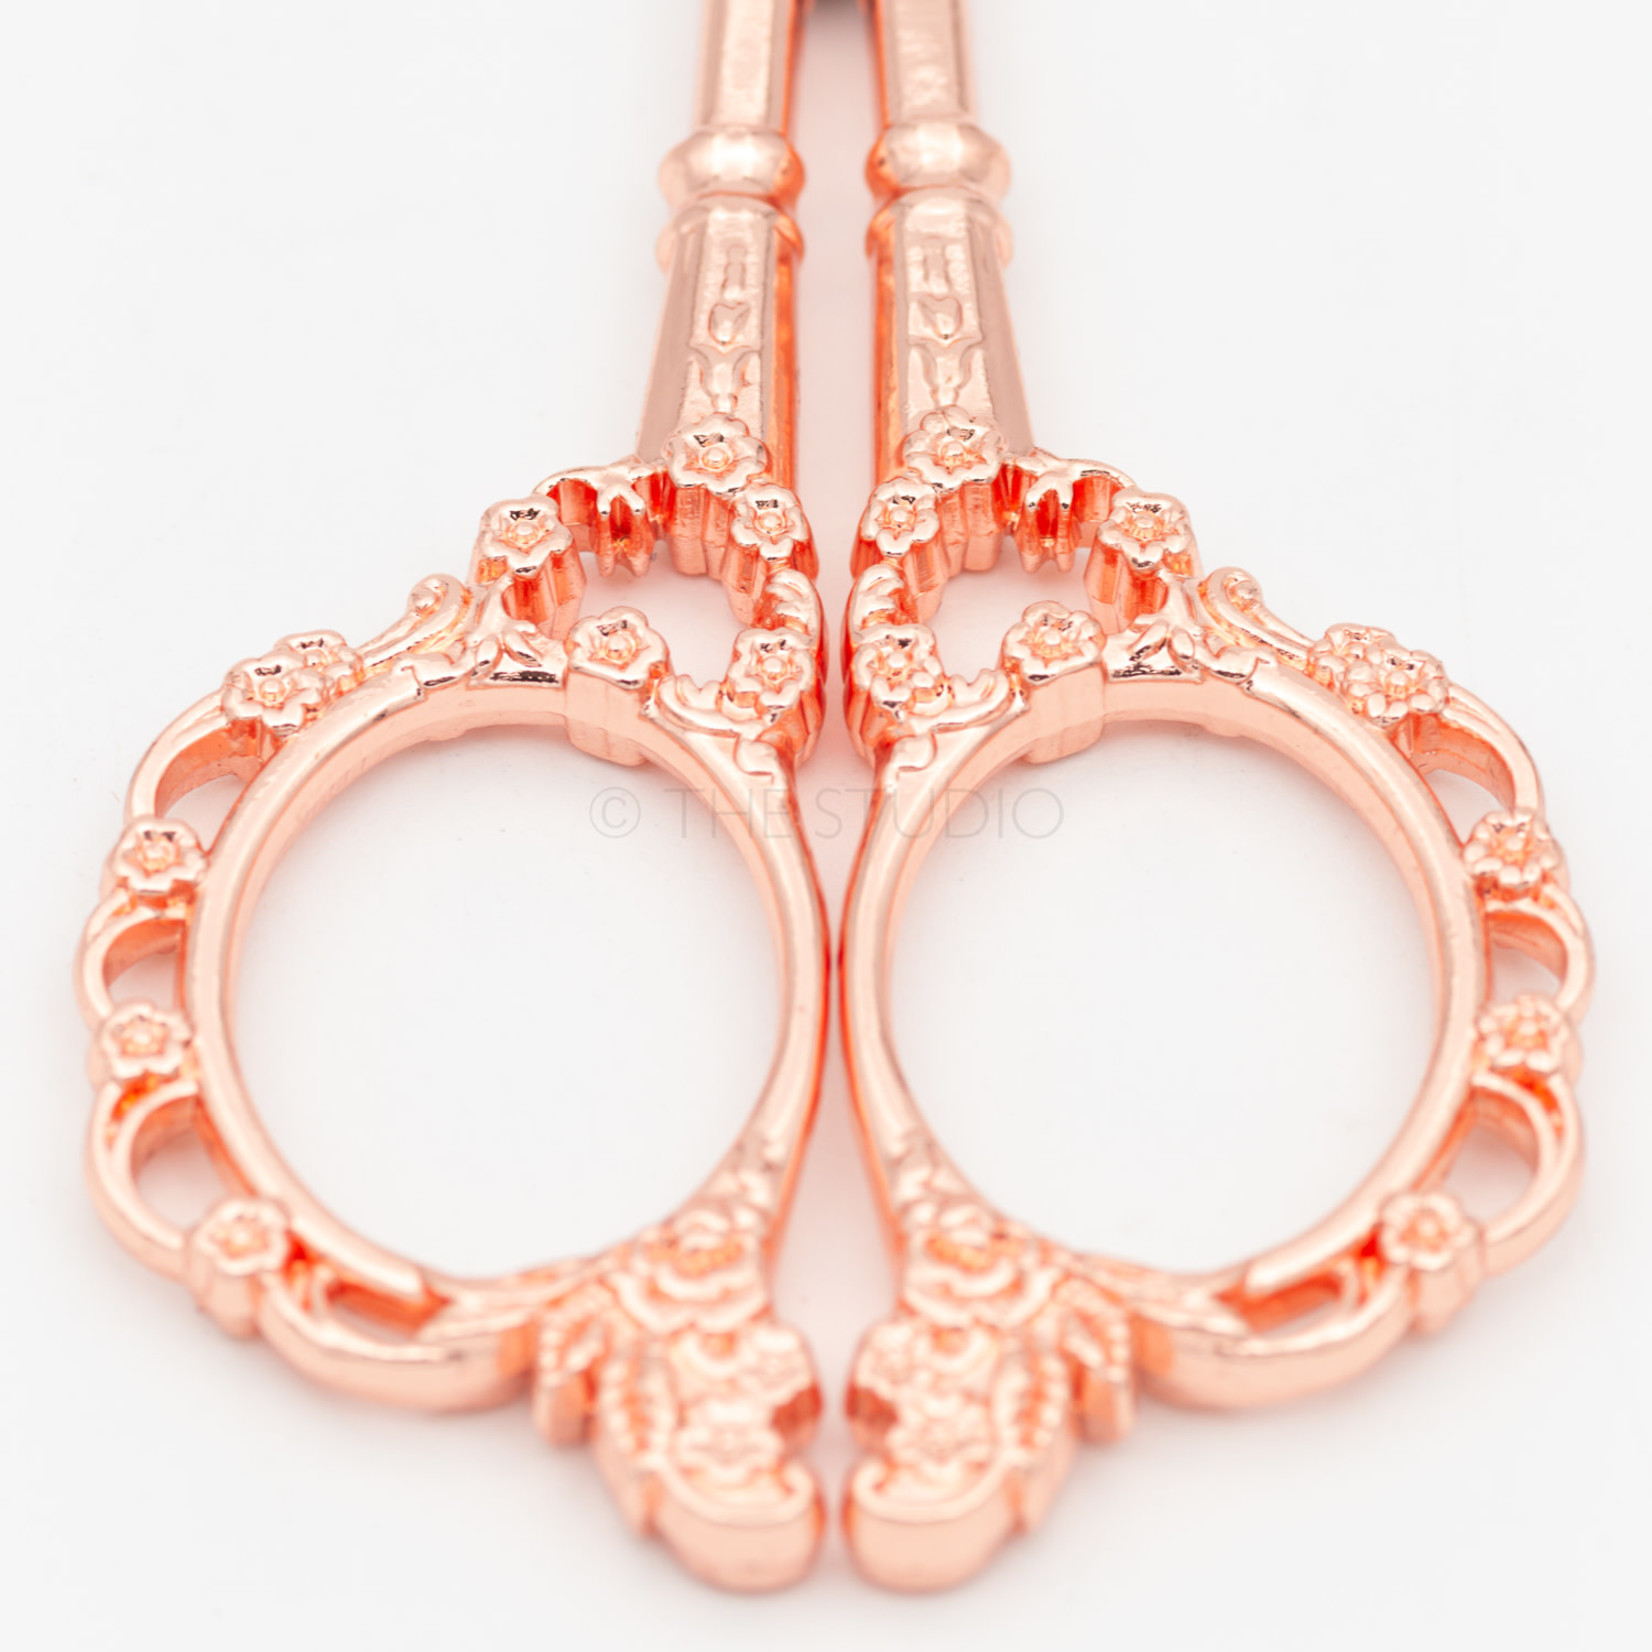 European Classical Scissors - Rose Gold